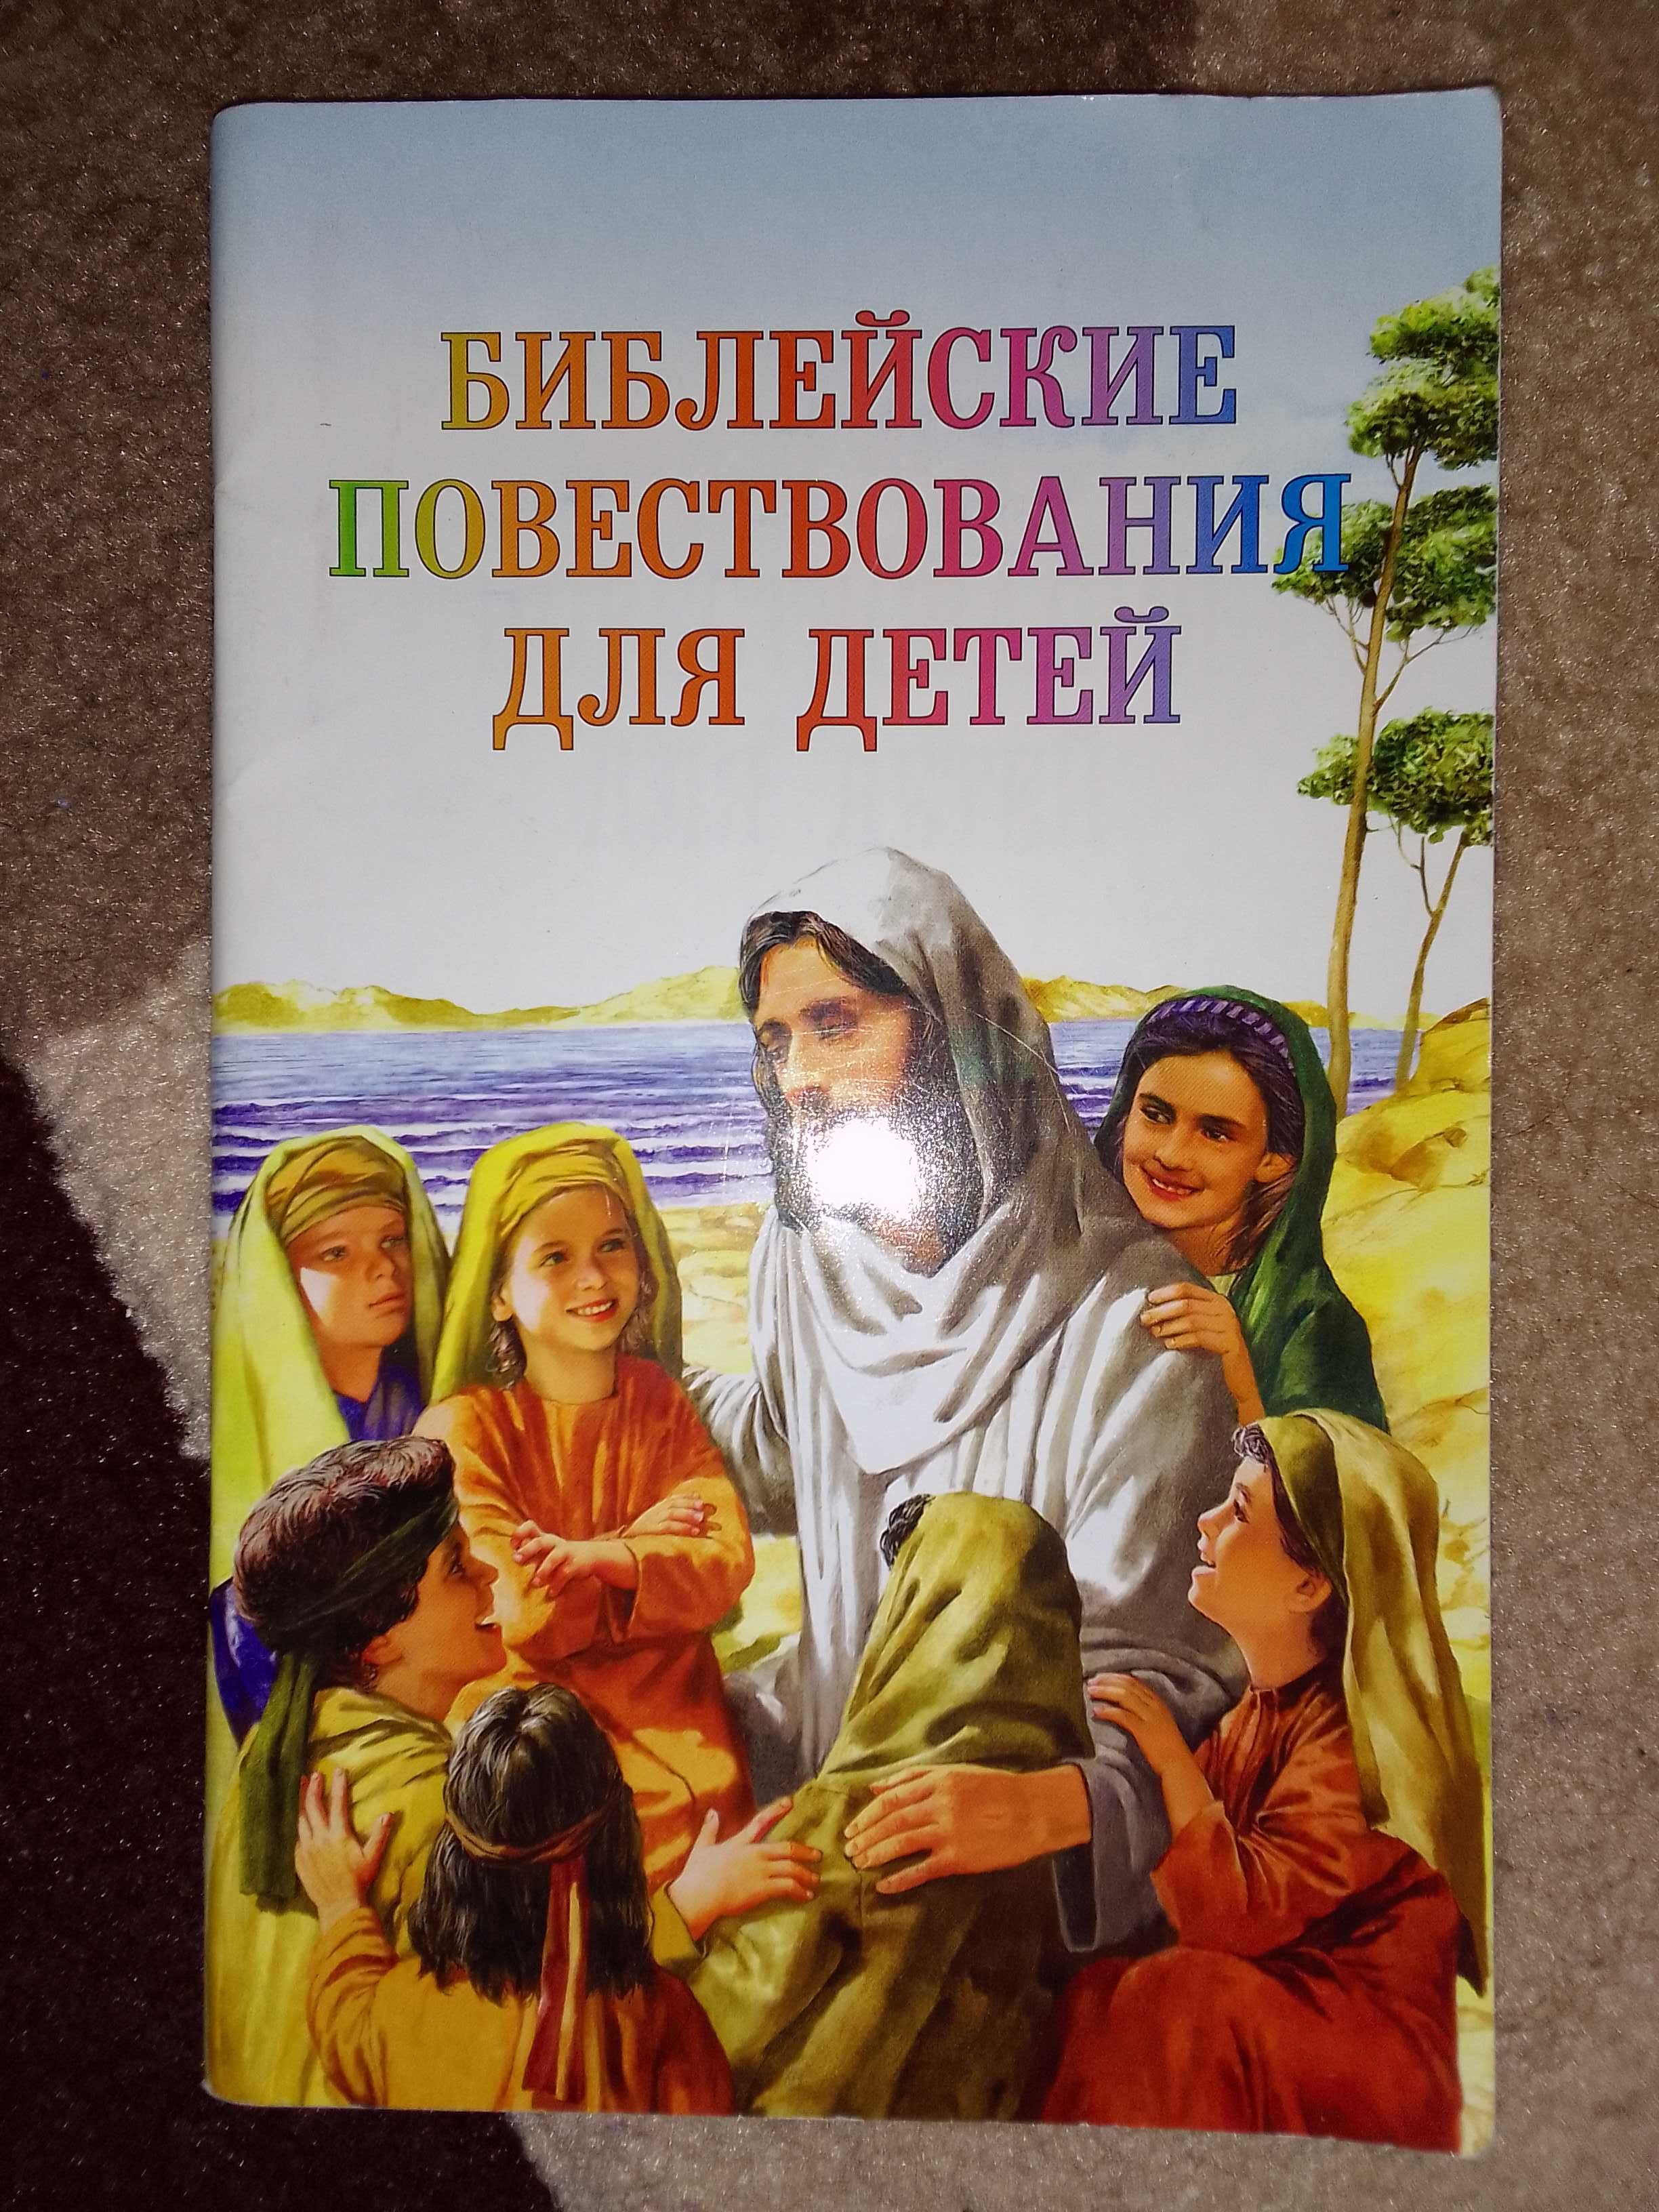 Книга "Библейские повестование для детей"